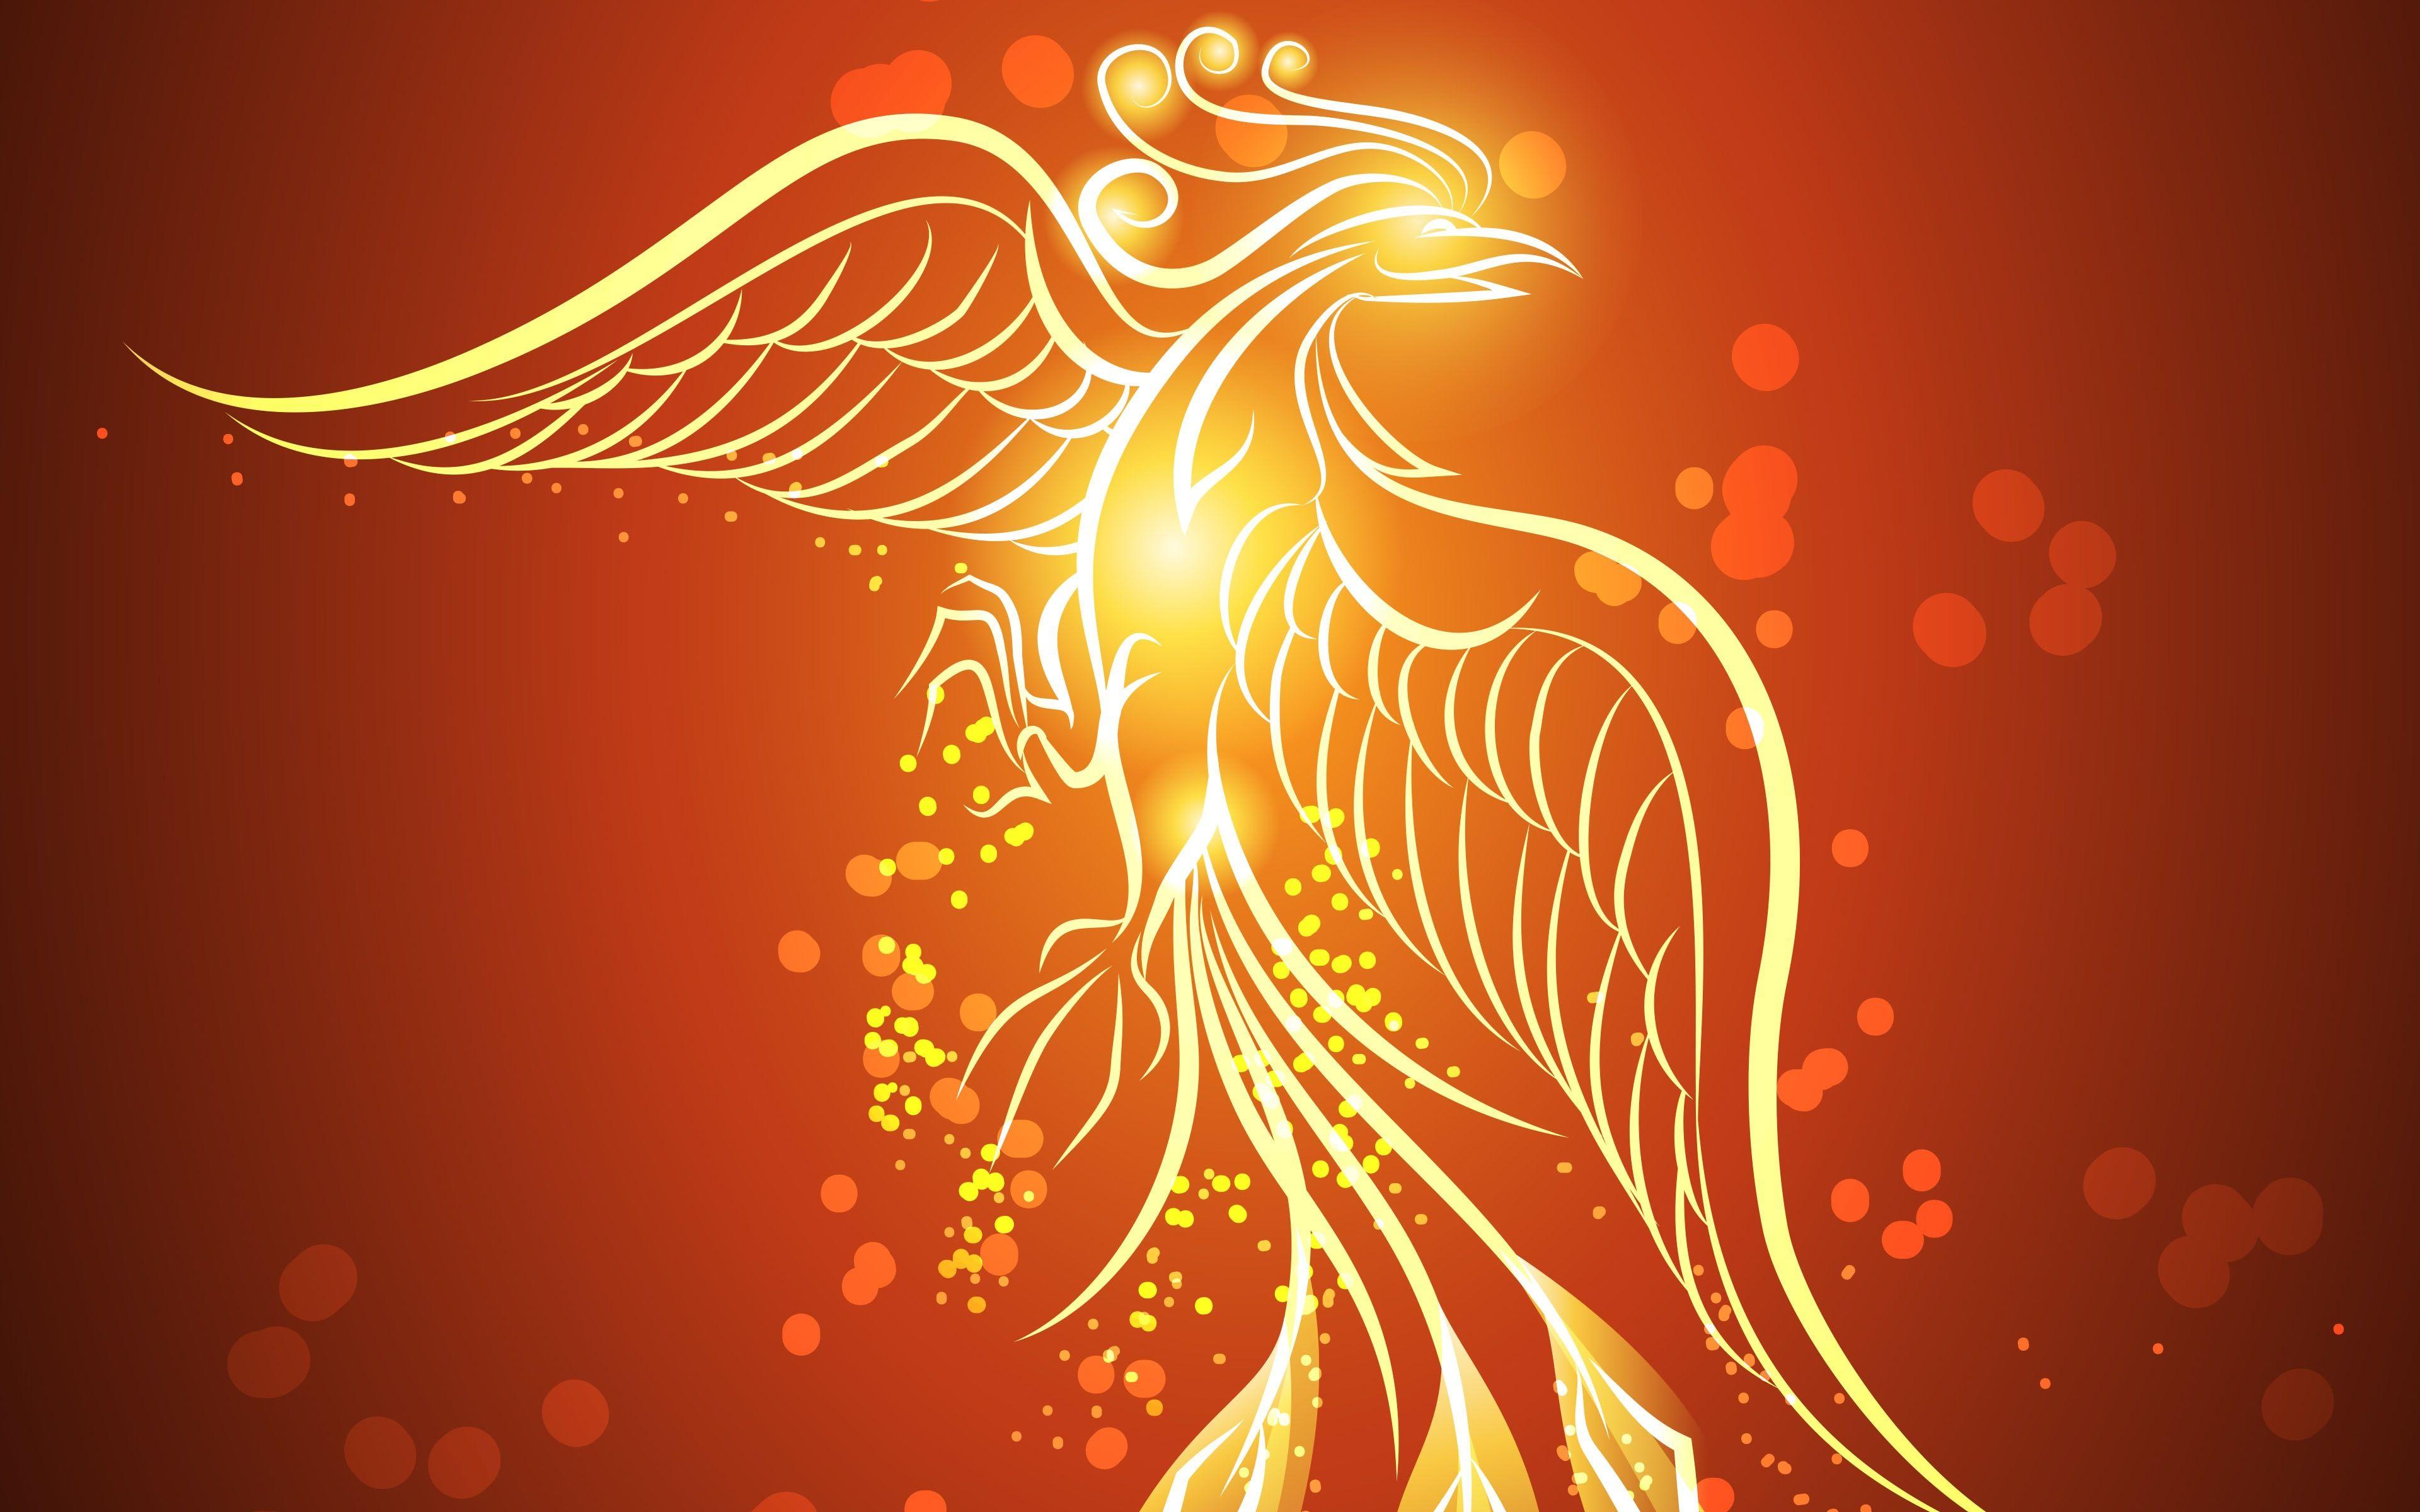 Phoenix Wallpaper | Ave fenix, Imágenes de fénix, Significado del ave fenix